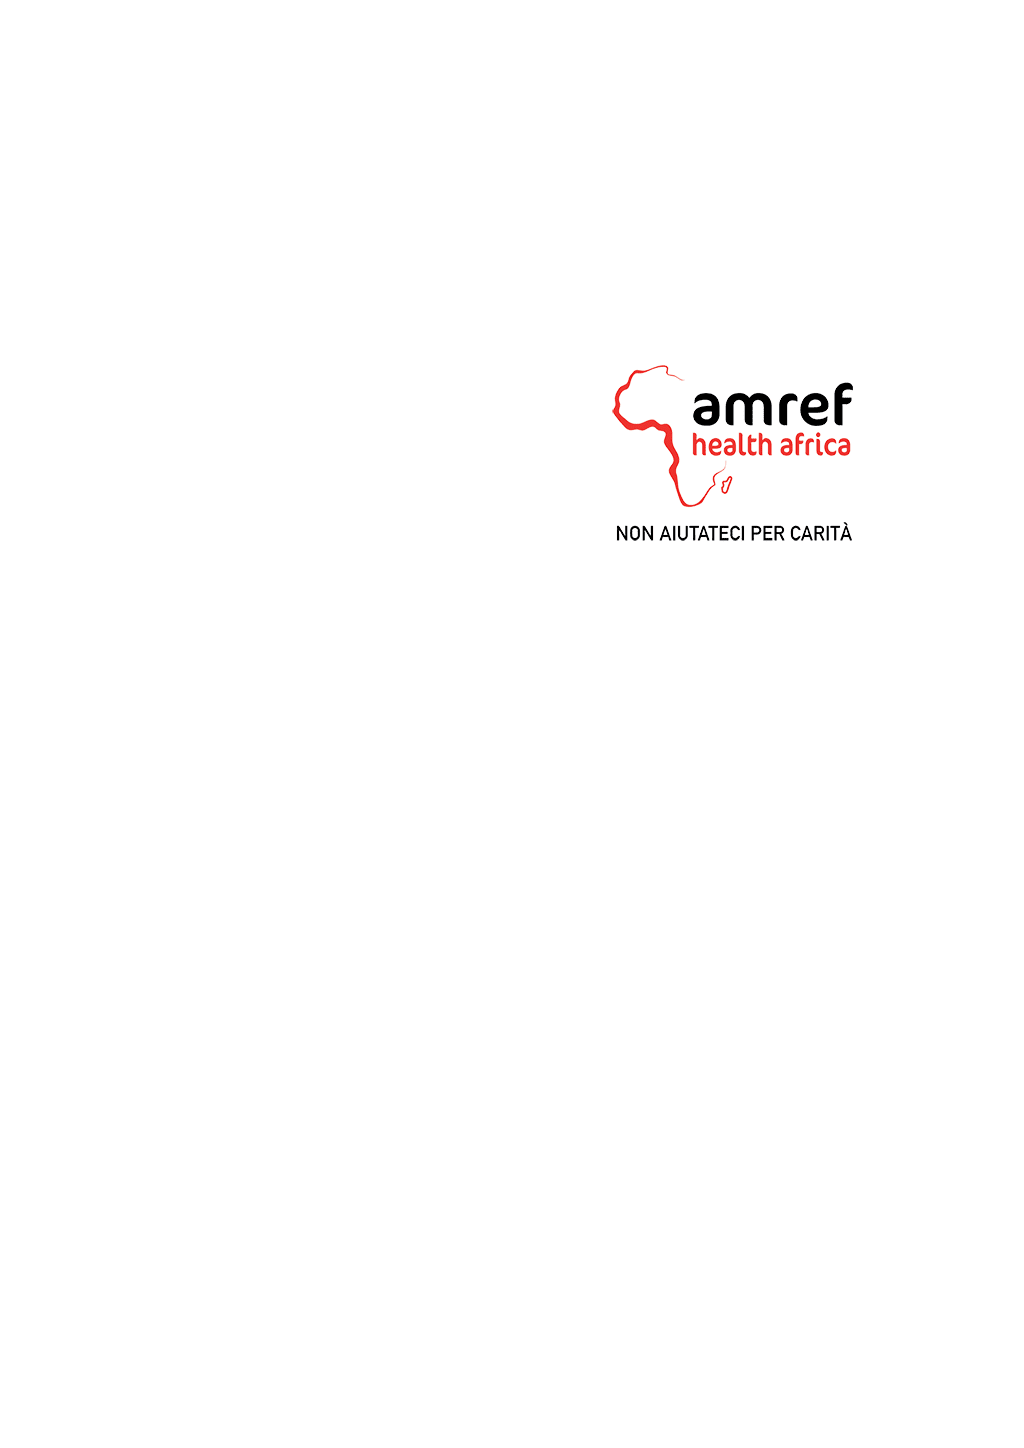 Amref Health Africa (taschino)